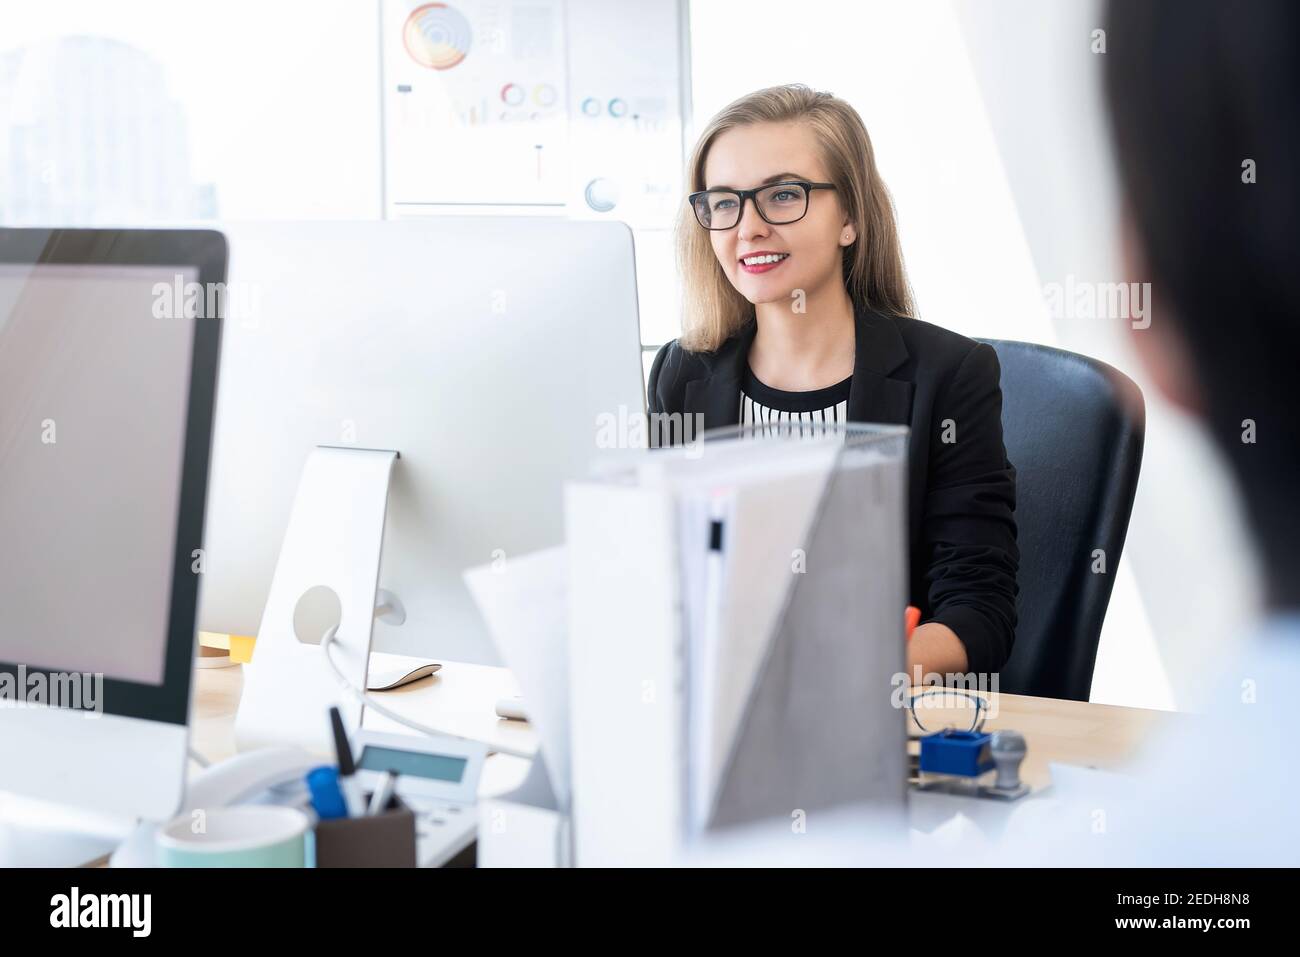 Lächelnd glücklich Geschäftsfrau weißen Kragen Arbeiter konzentriert sich auf die Arbeit mit Desktop-Computer im Büro Stockfoto